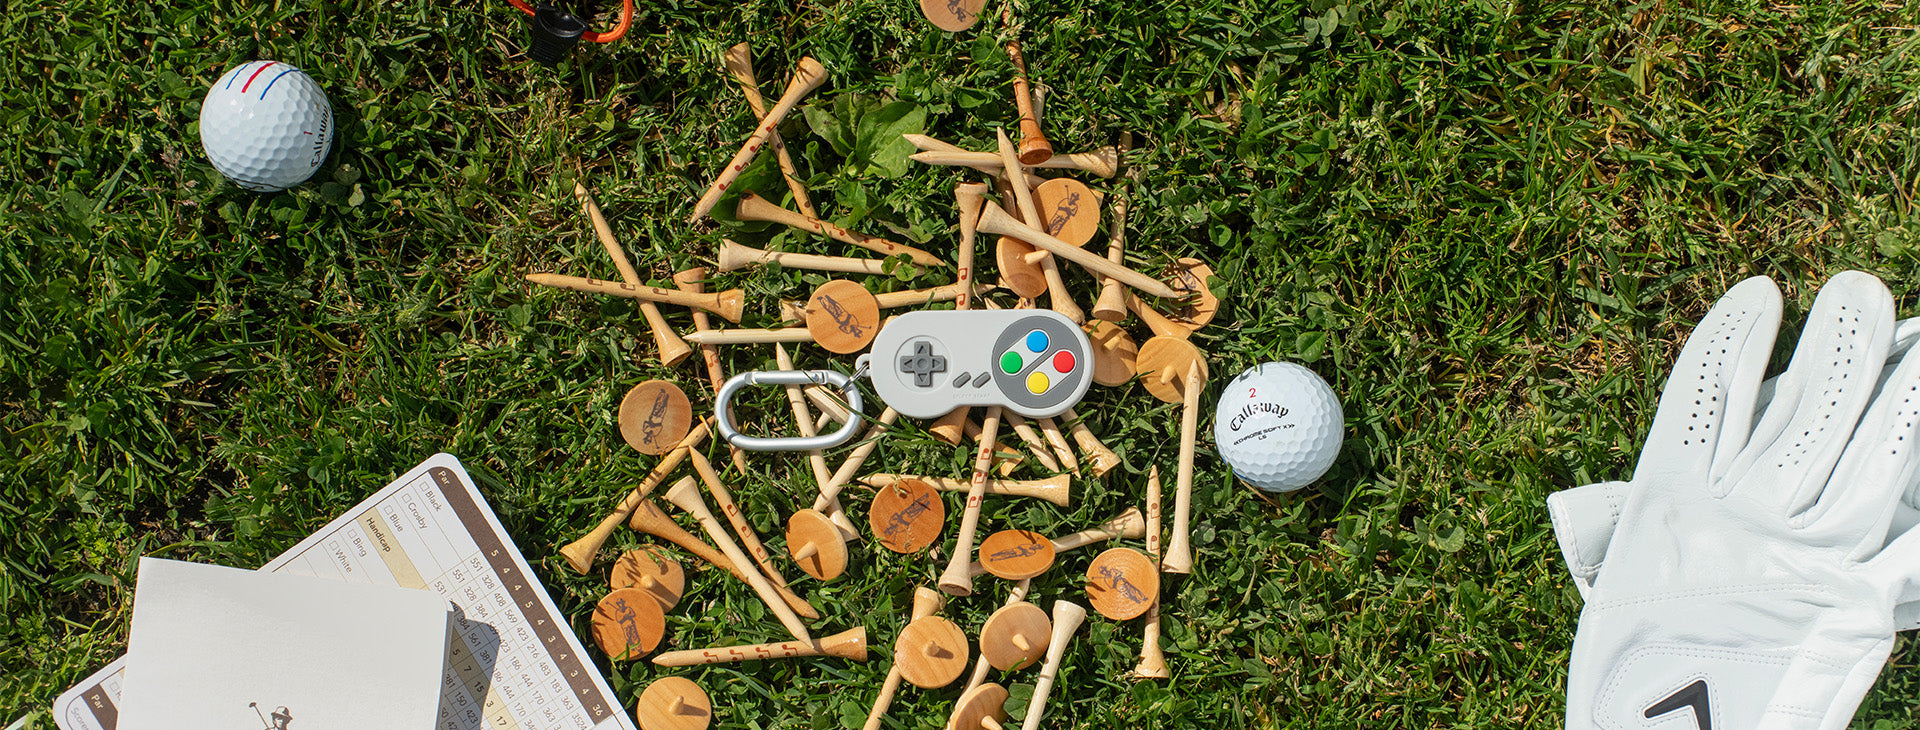 Golf Essentials for Beginners: Top Golf Tech